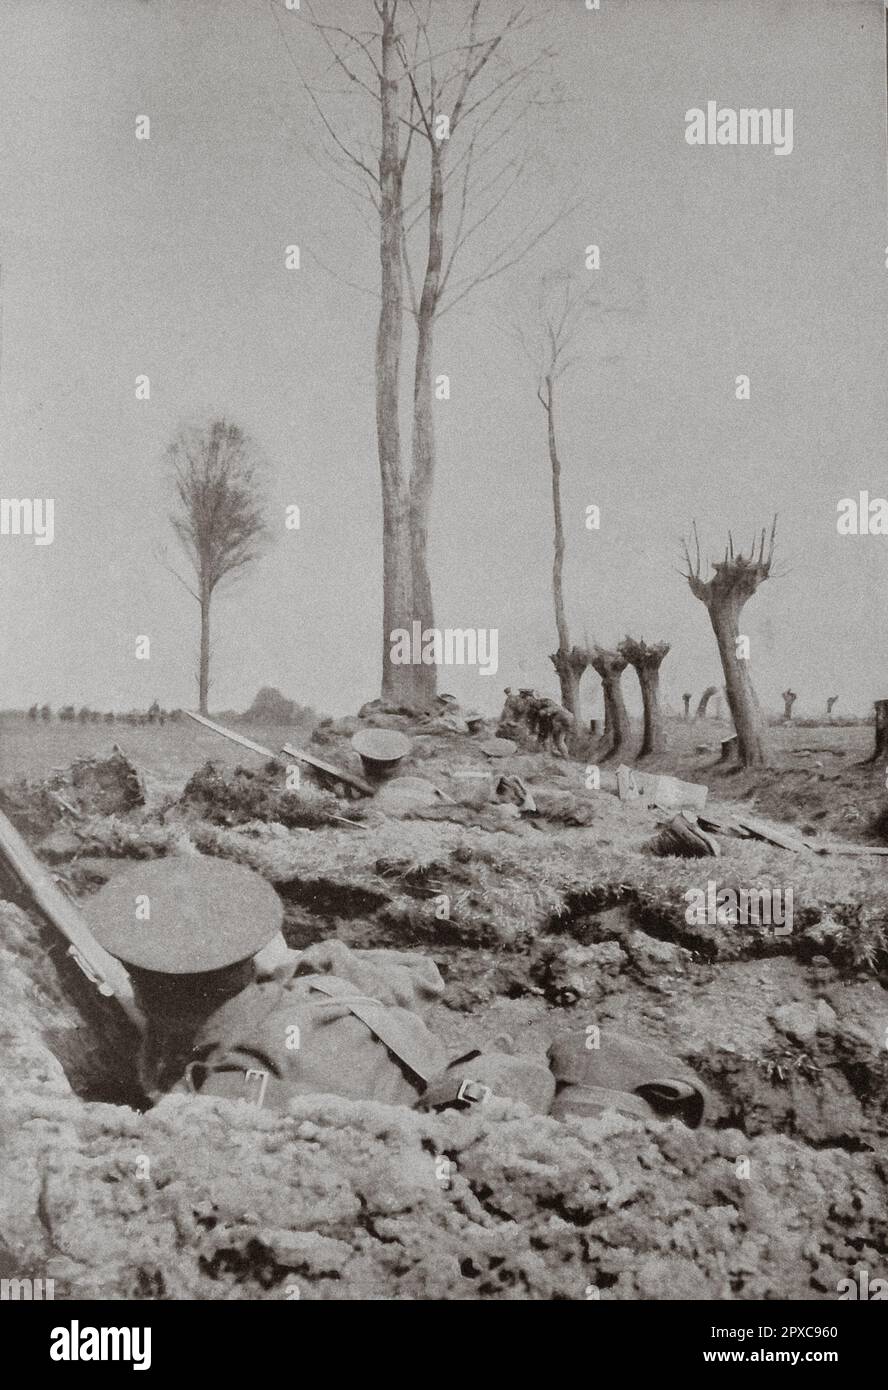 Première Guerre mondiale La deuxième bataille d'Ypres. Dans le secteur anglais: Les 'King's Liverpools' dans la première ligne, avant l'attaque. Au cours de la première Guerre mondiale, la deuxième bataille d'Ypres a été menée du 22 avril au 25 mai 1915 pour le contrôle du terrain élevé tactiquement important à l'est et au sud de la ville flamande d'Ypres, dans l'ouest de la Belgique. La première bataille d'Ypres avait été menée l'automne précédent. La deuxième bataille d'Ypres a été la première utilisation massive par l'Allemagne de gaz toxiques sur le front occidental. Banque D'Images